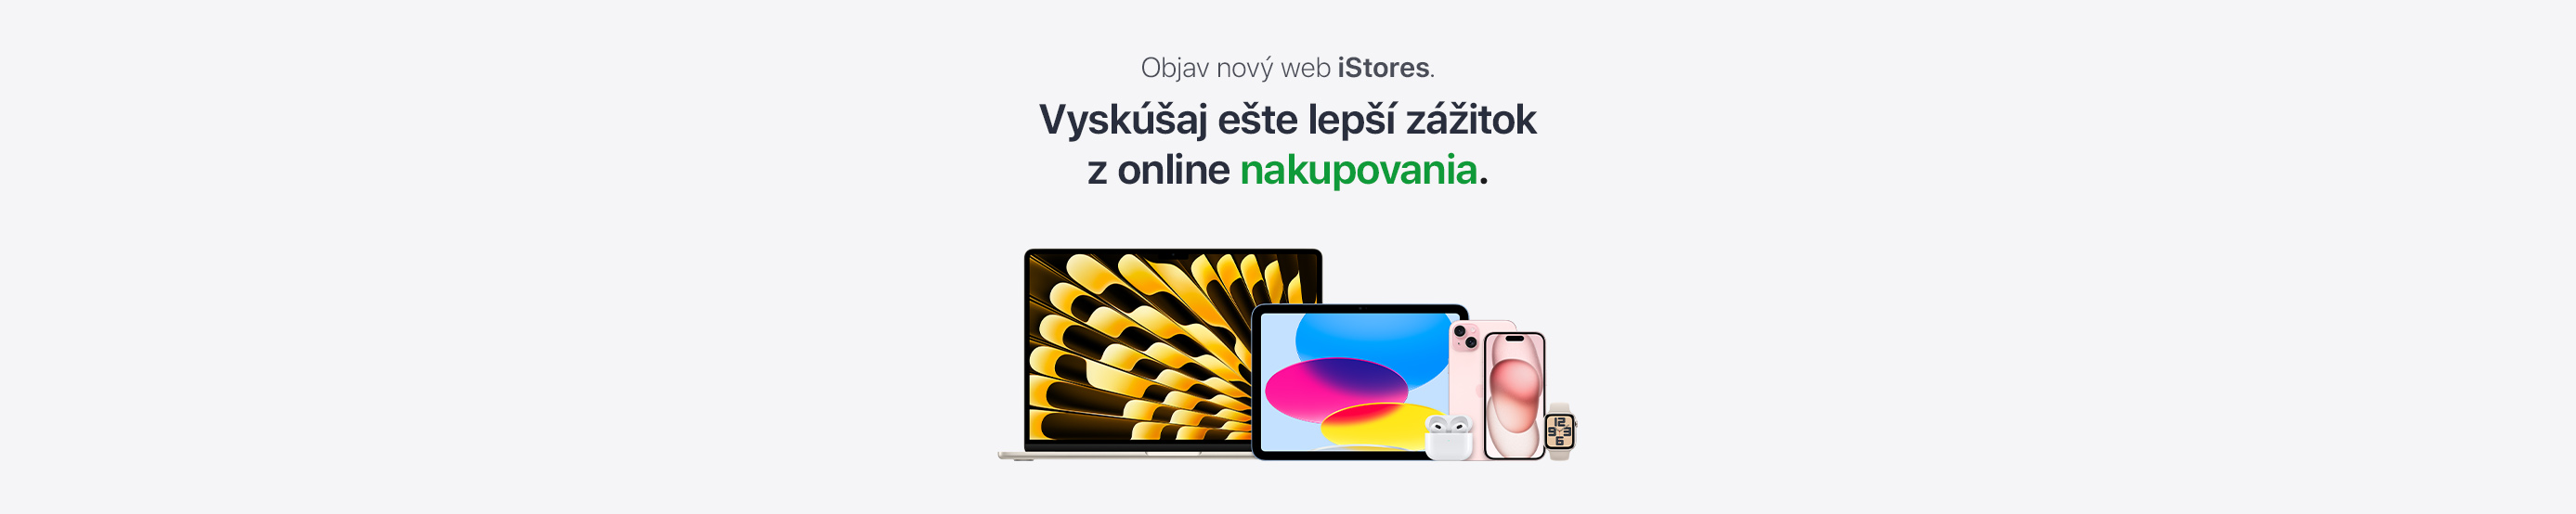 Objav nový web iStores.sk